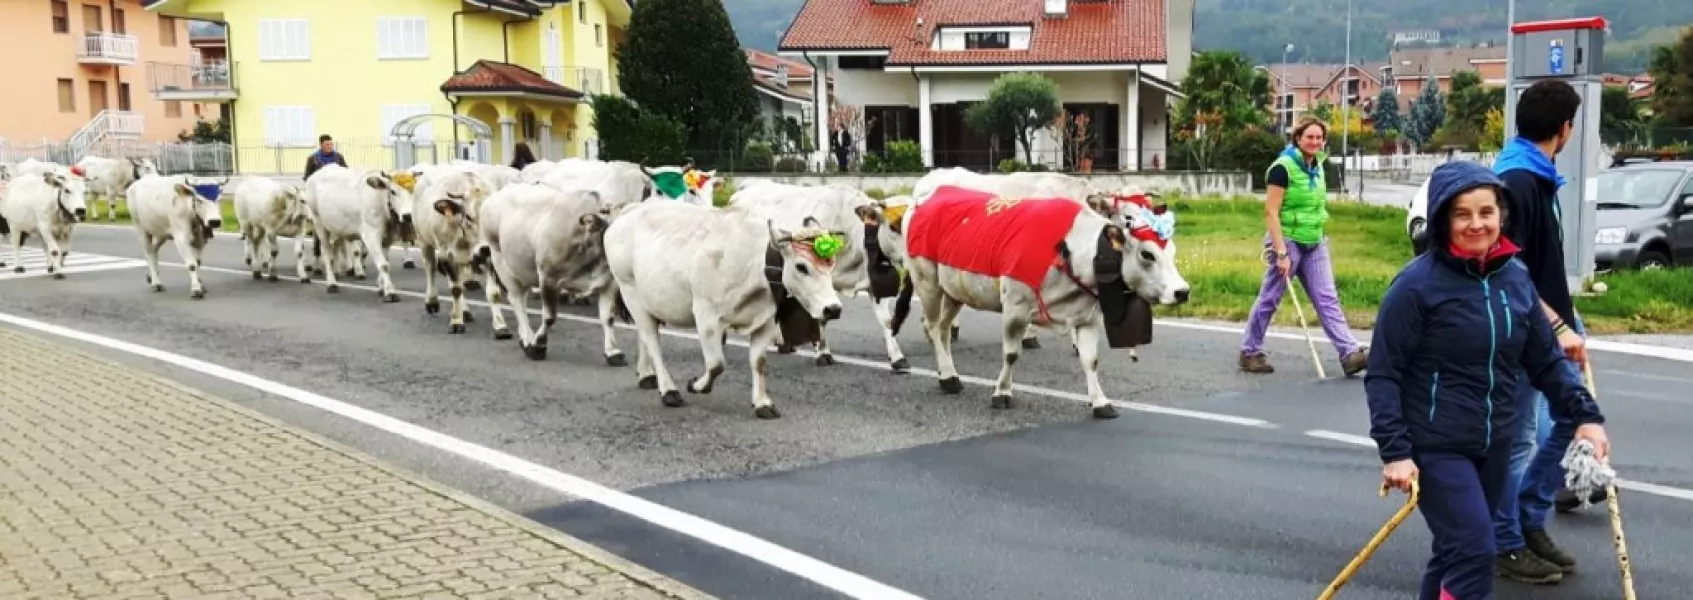 Oltre 150 vacche da carne di razza Piemontese dei fratelli Federica e Mauro Fino, di ritorno dalla valle Maira passano per le vie del centro